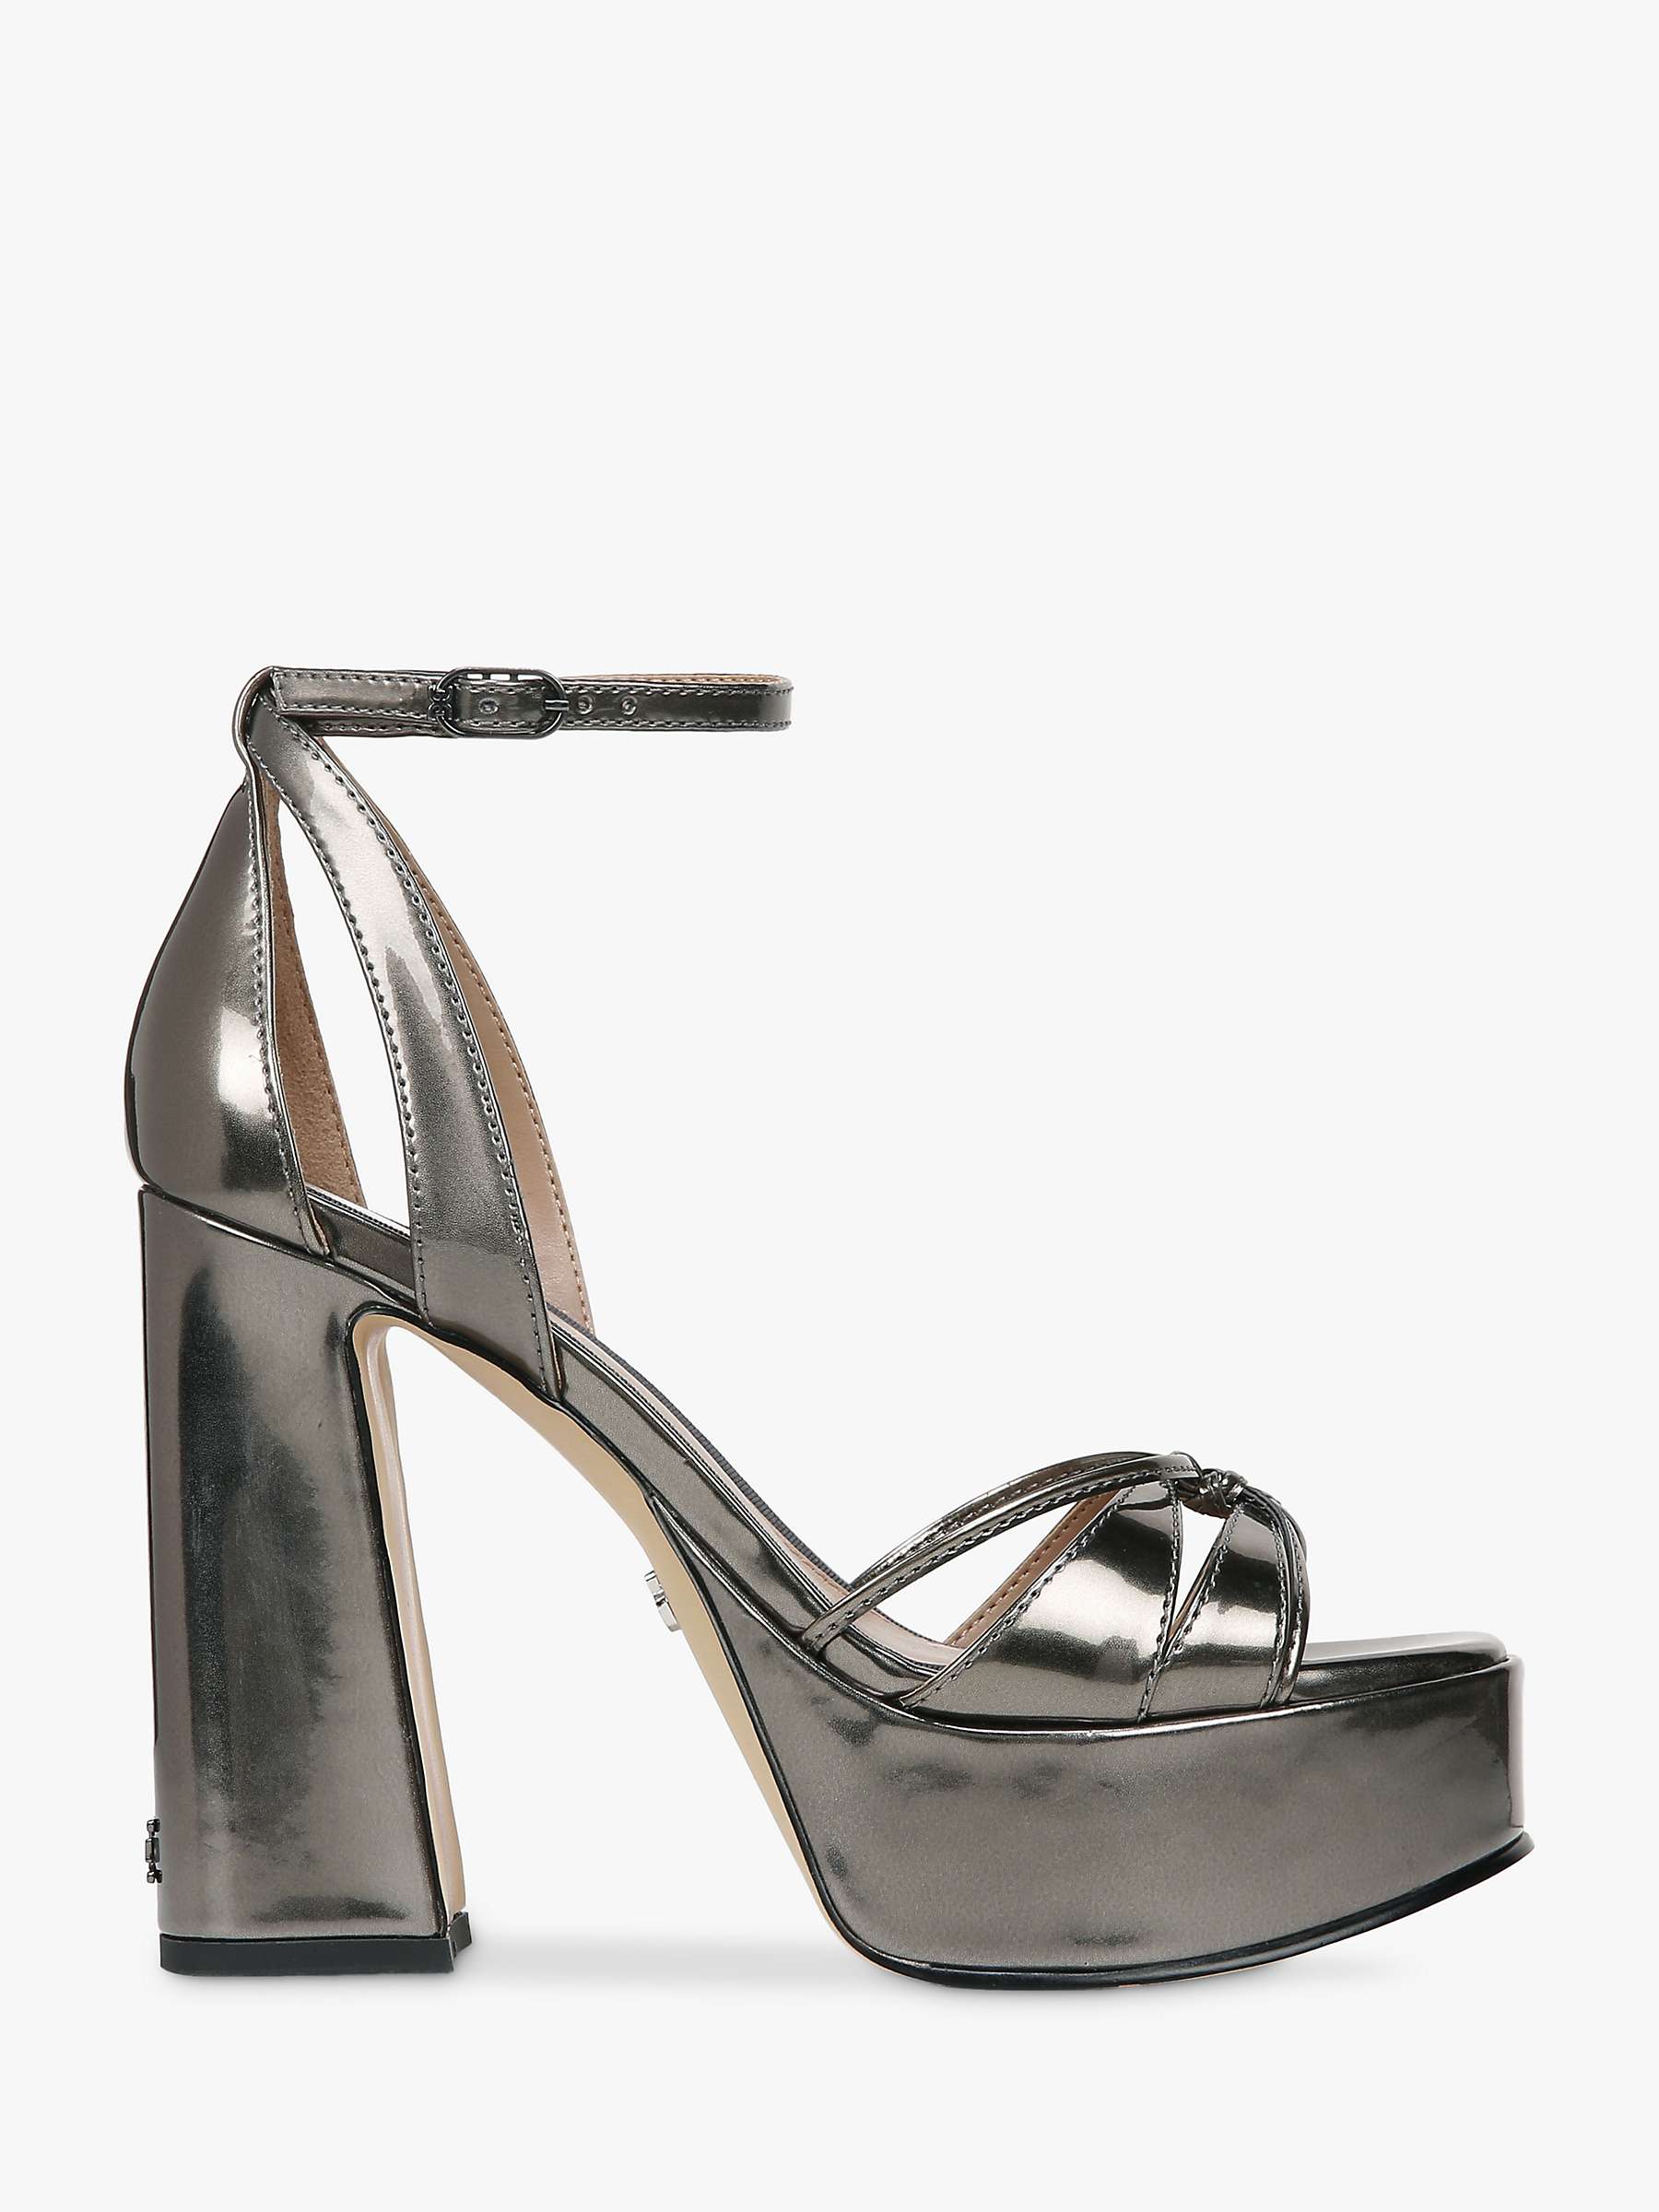 Buy Sam Edelman Kamille Platform Sandals, Pewter Online at johnlewis.com